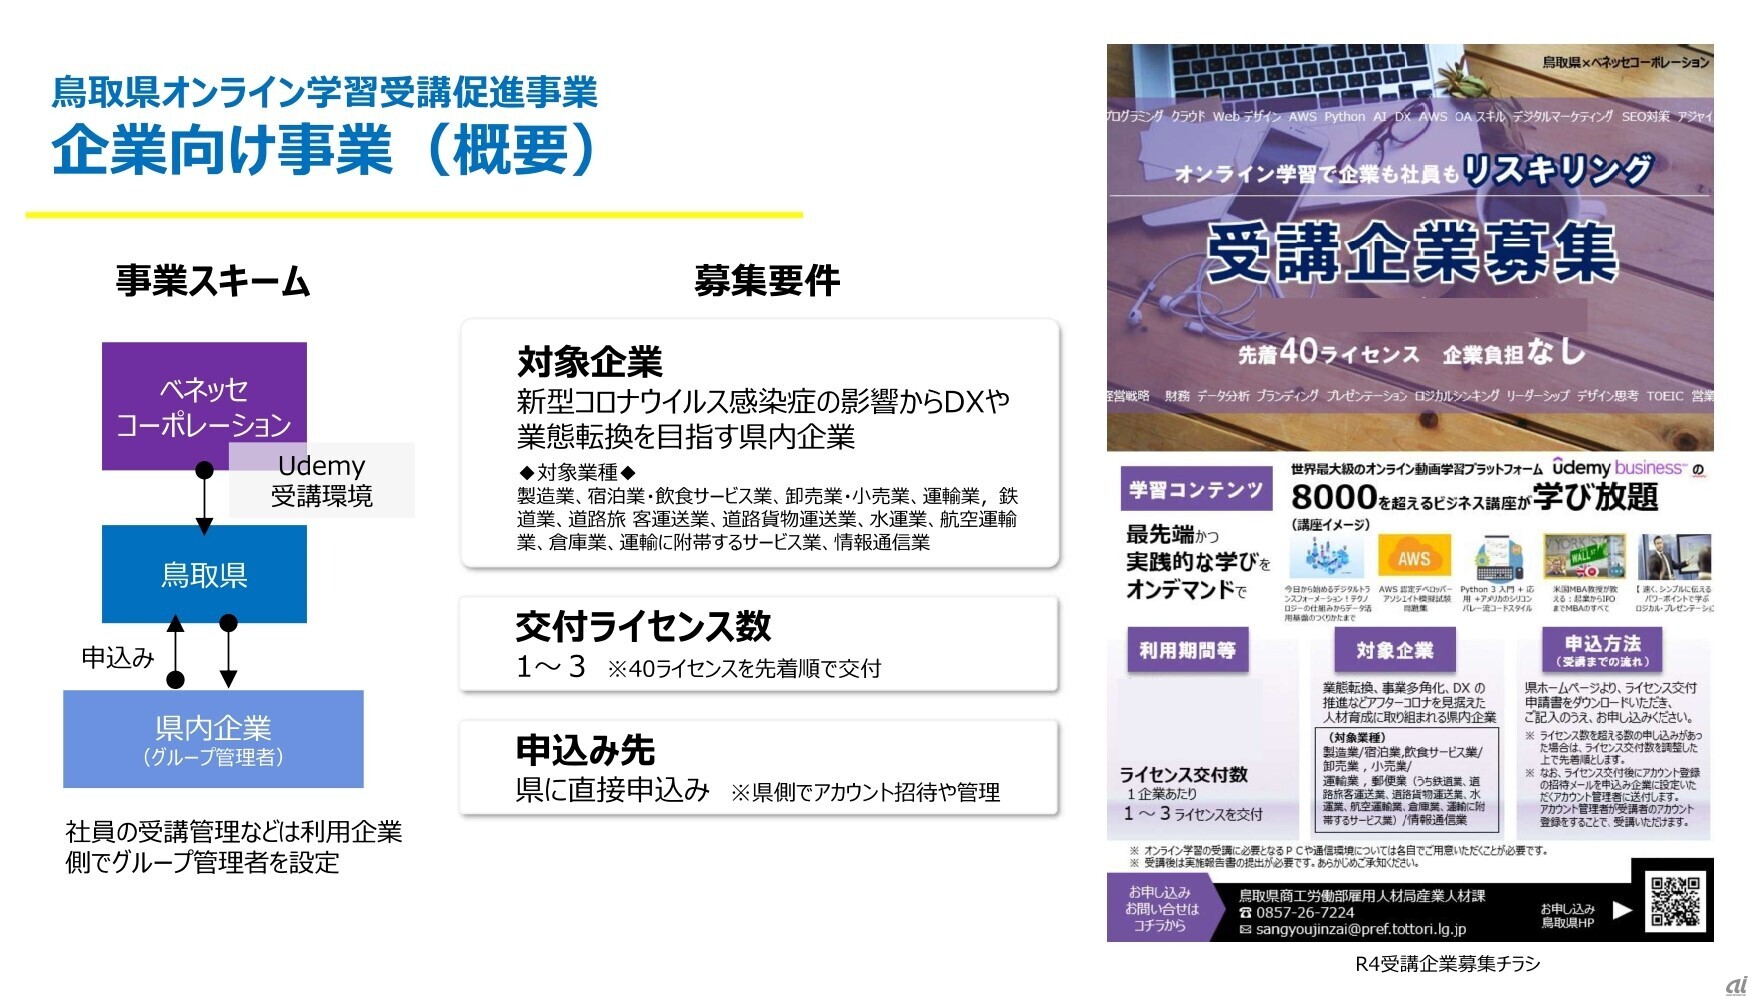 鳥取県が取り組む、オンライン学習受講即人事業の概要（提供：ベネッセ）